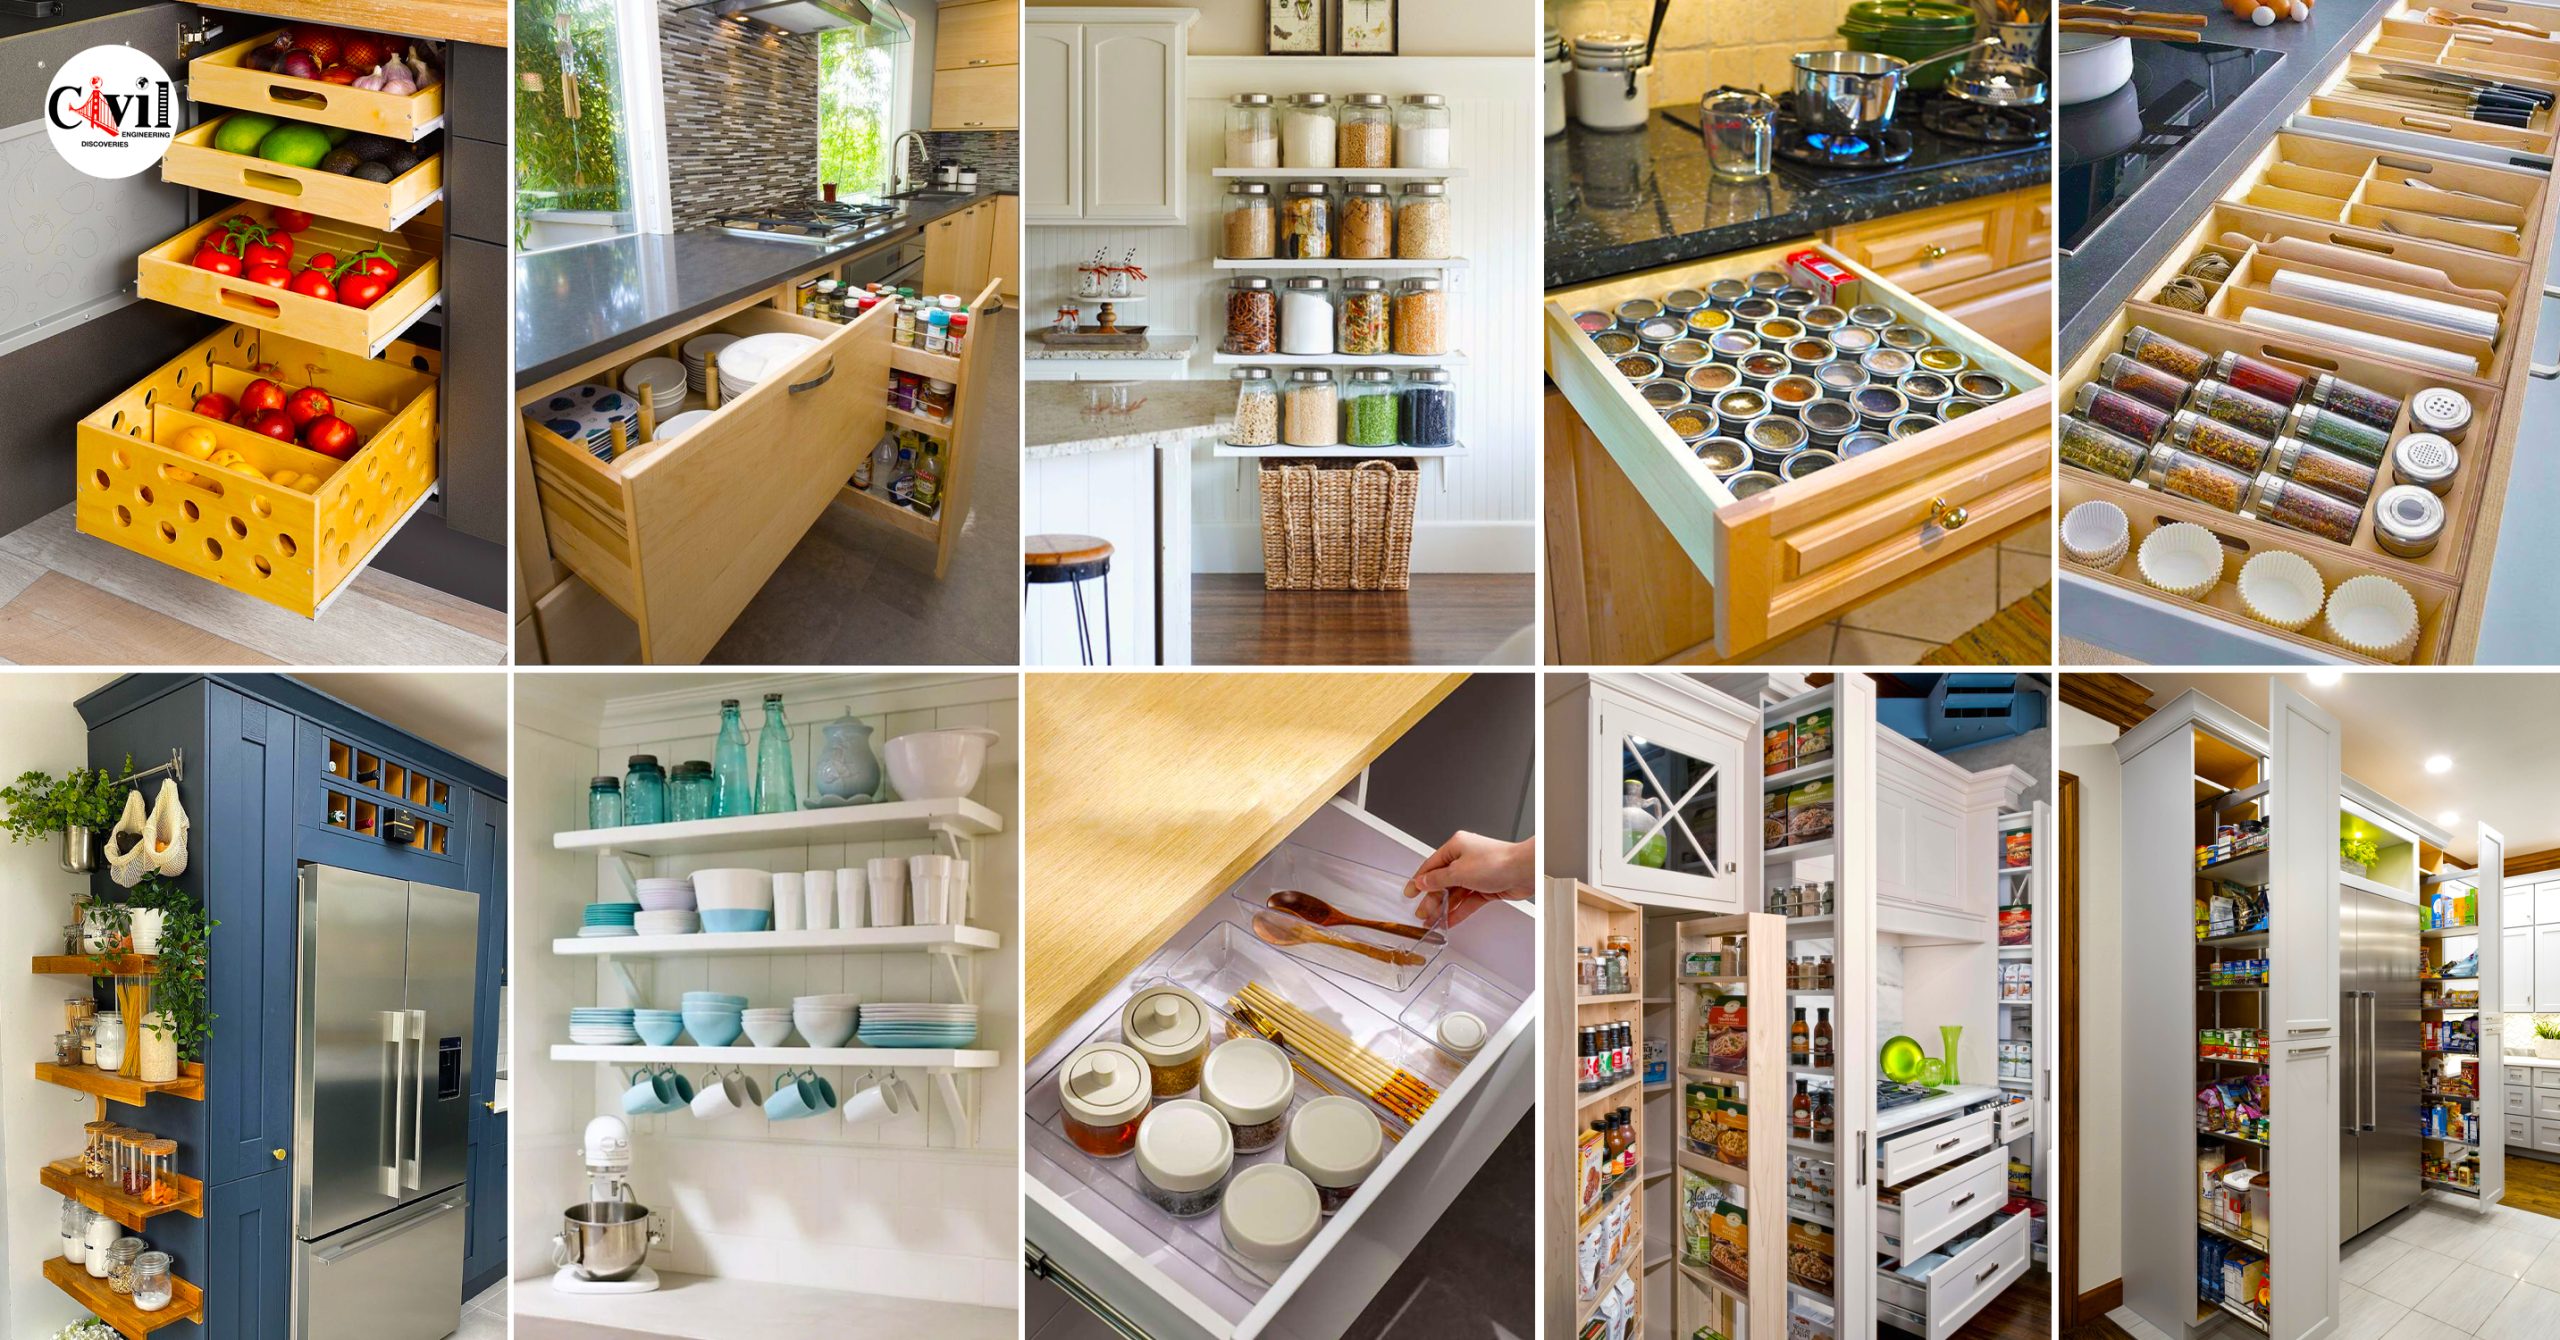 Kitchen Organization Ideas to Maximize Storage Space